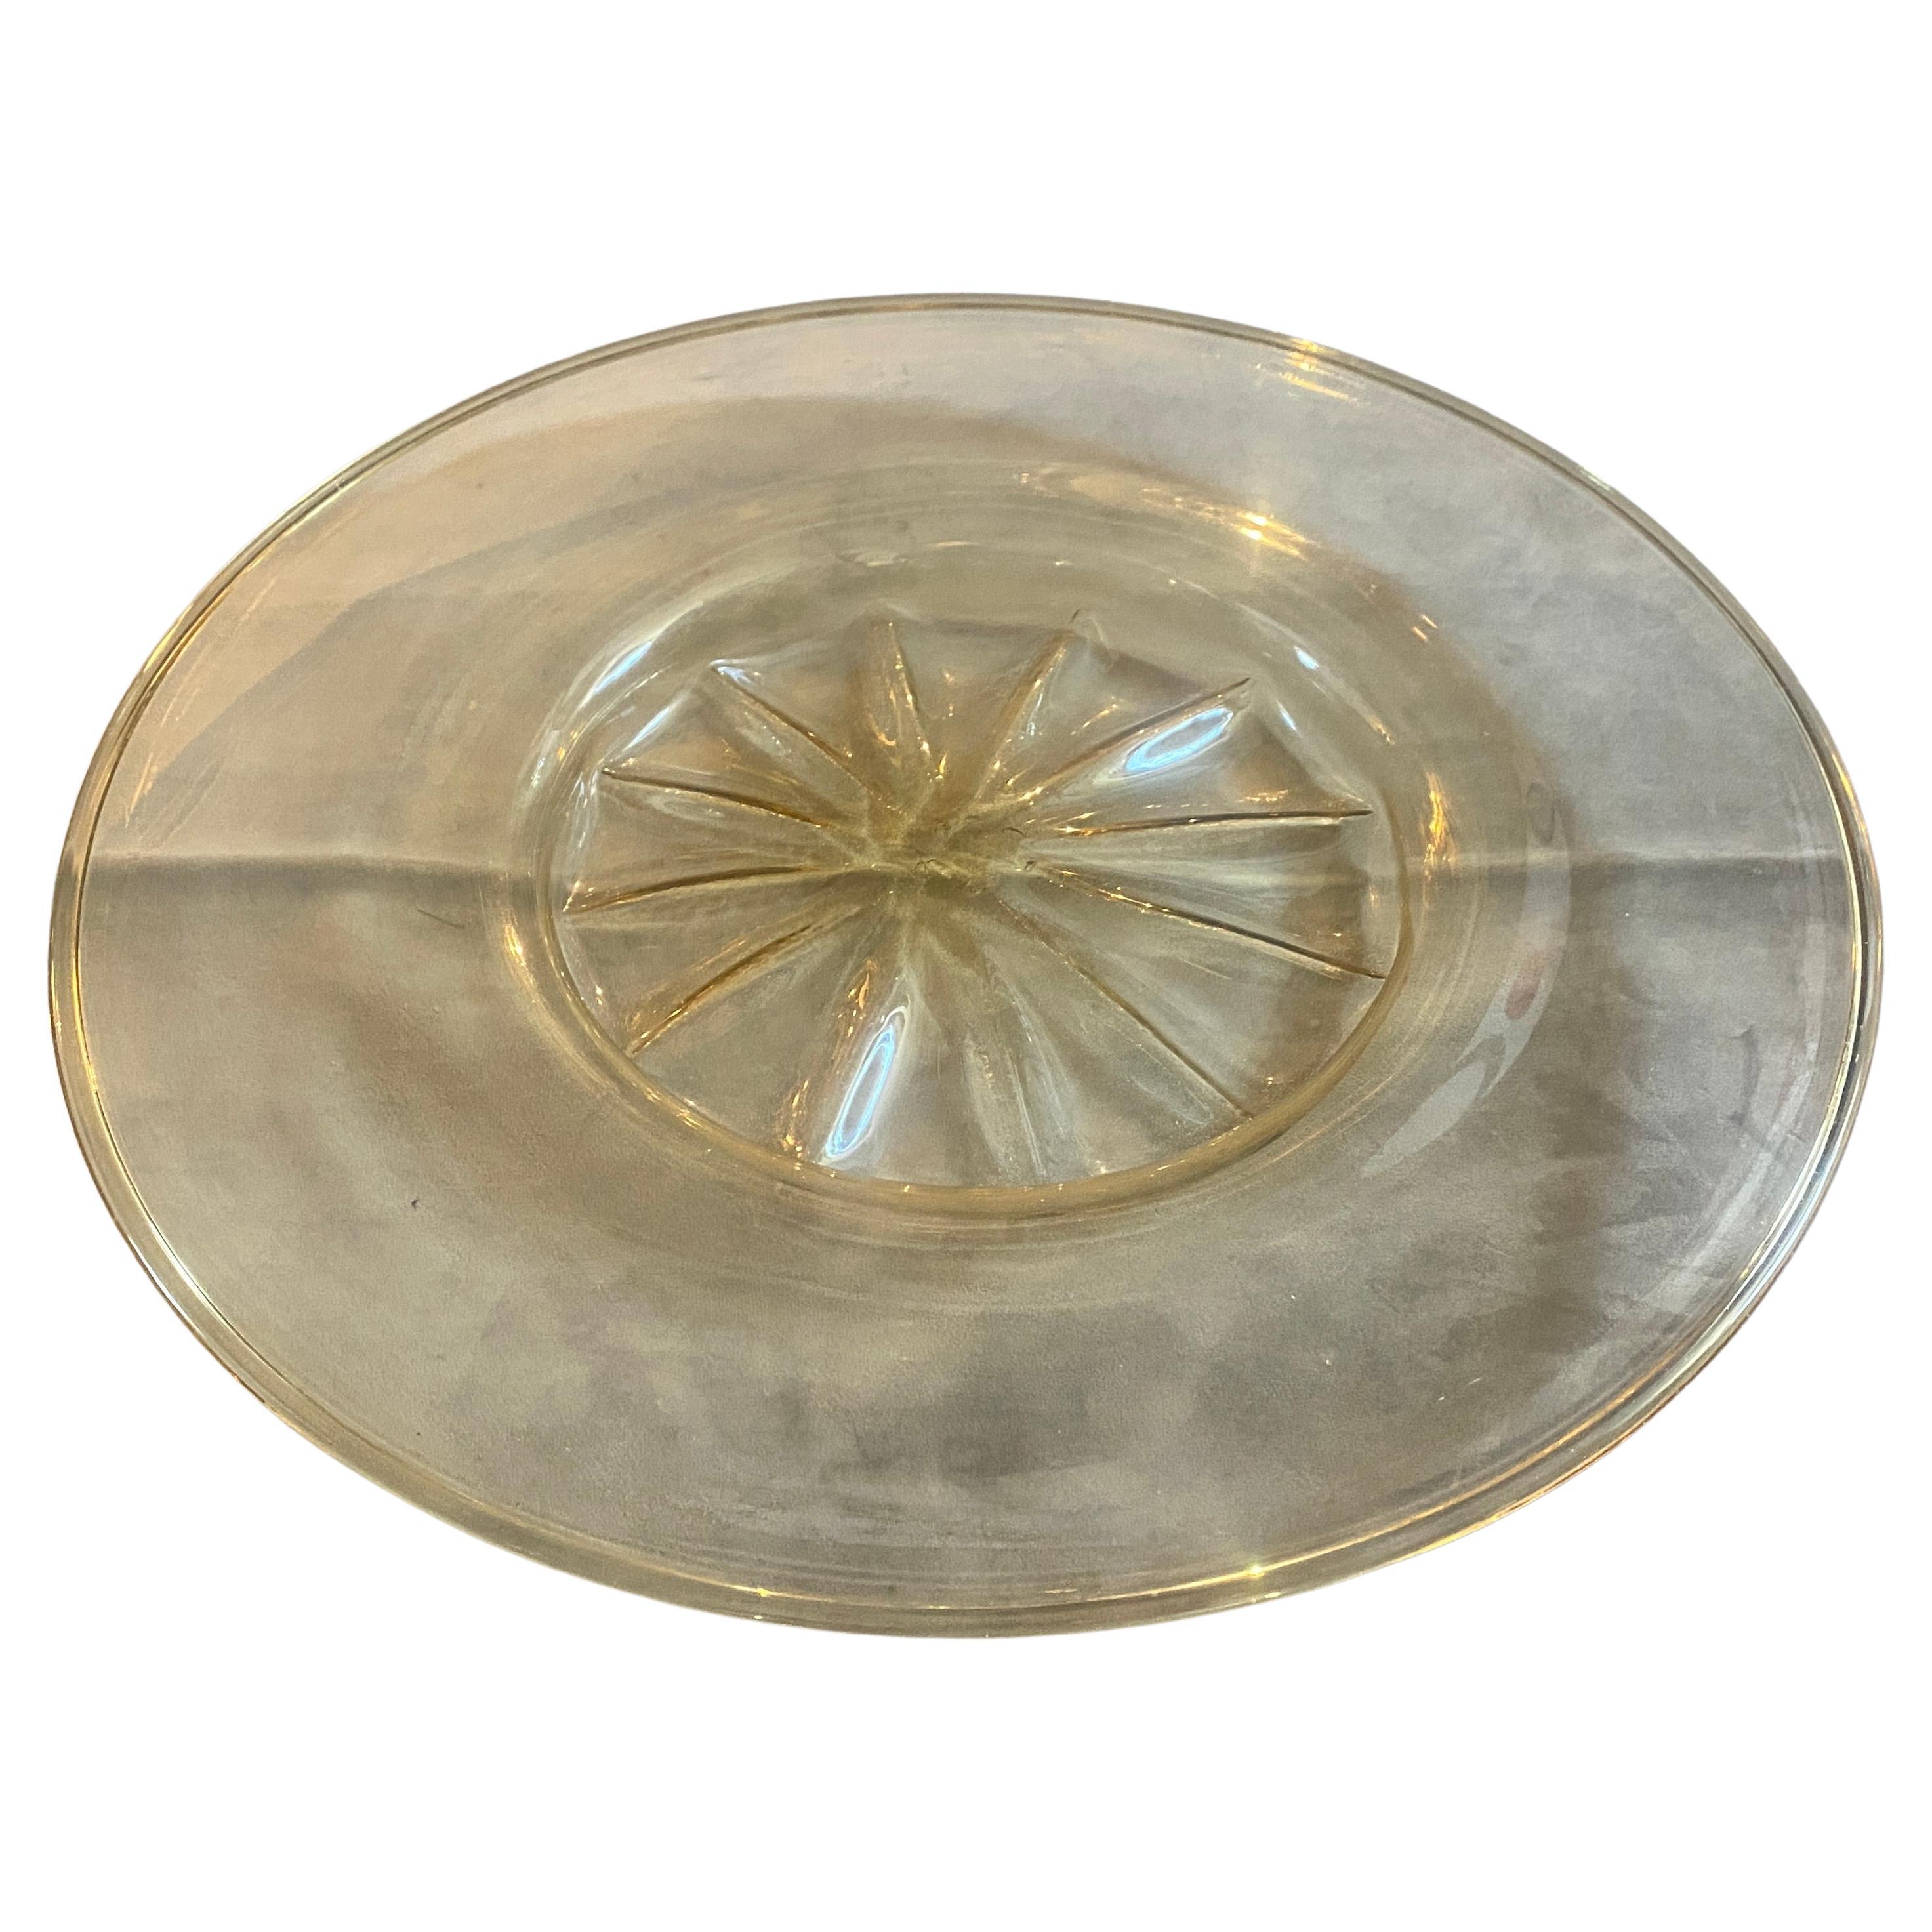 Grande assiette en verre soufflé or et transparent de Murano, conçue à Murano par Vittorio Zecchin pour Venini dans les années trente. Il est en parfait état. Cette assiette, créée par le célèbre artiste verrier Vittorio Zecchin pour Venini dans les